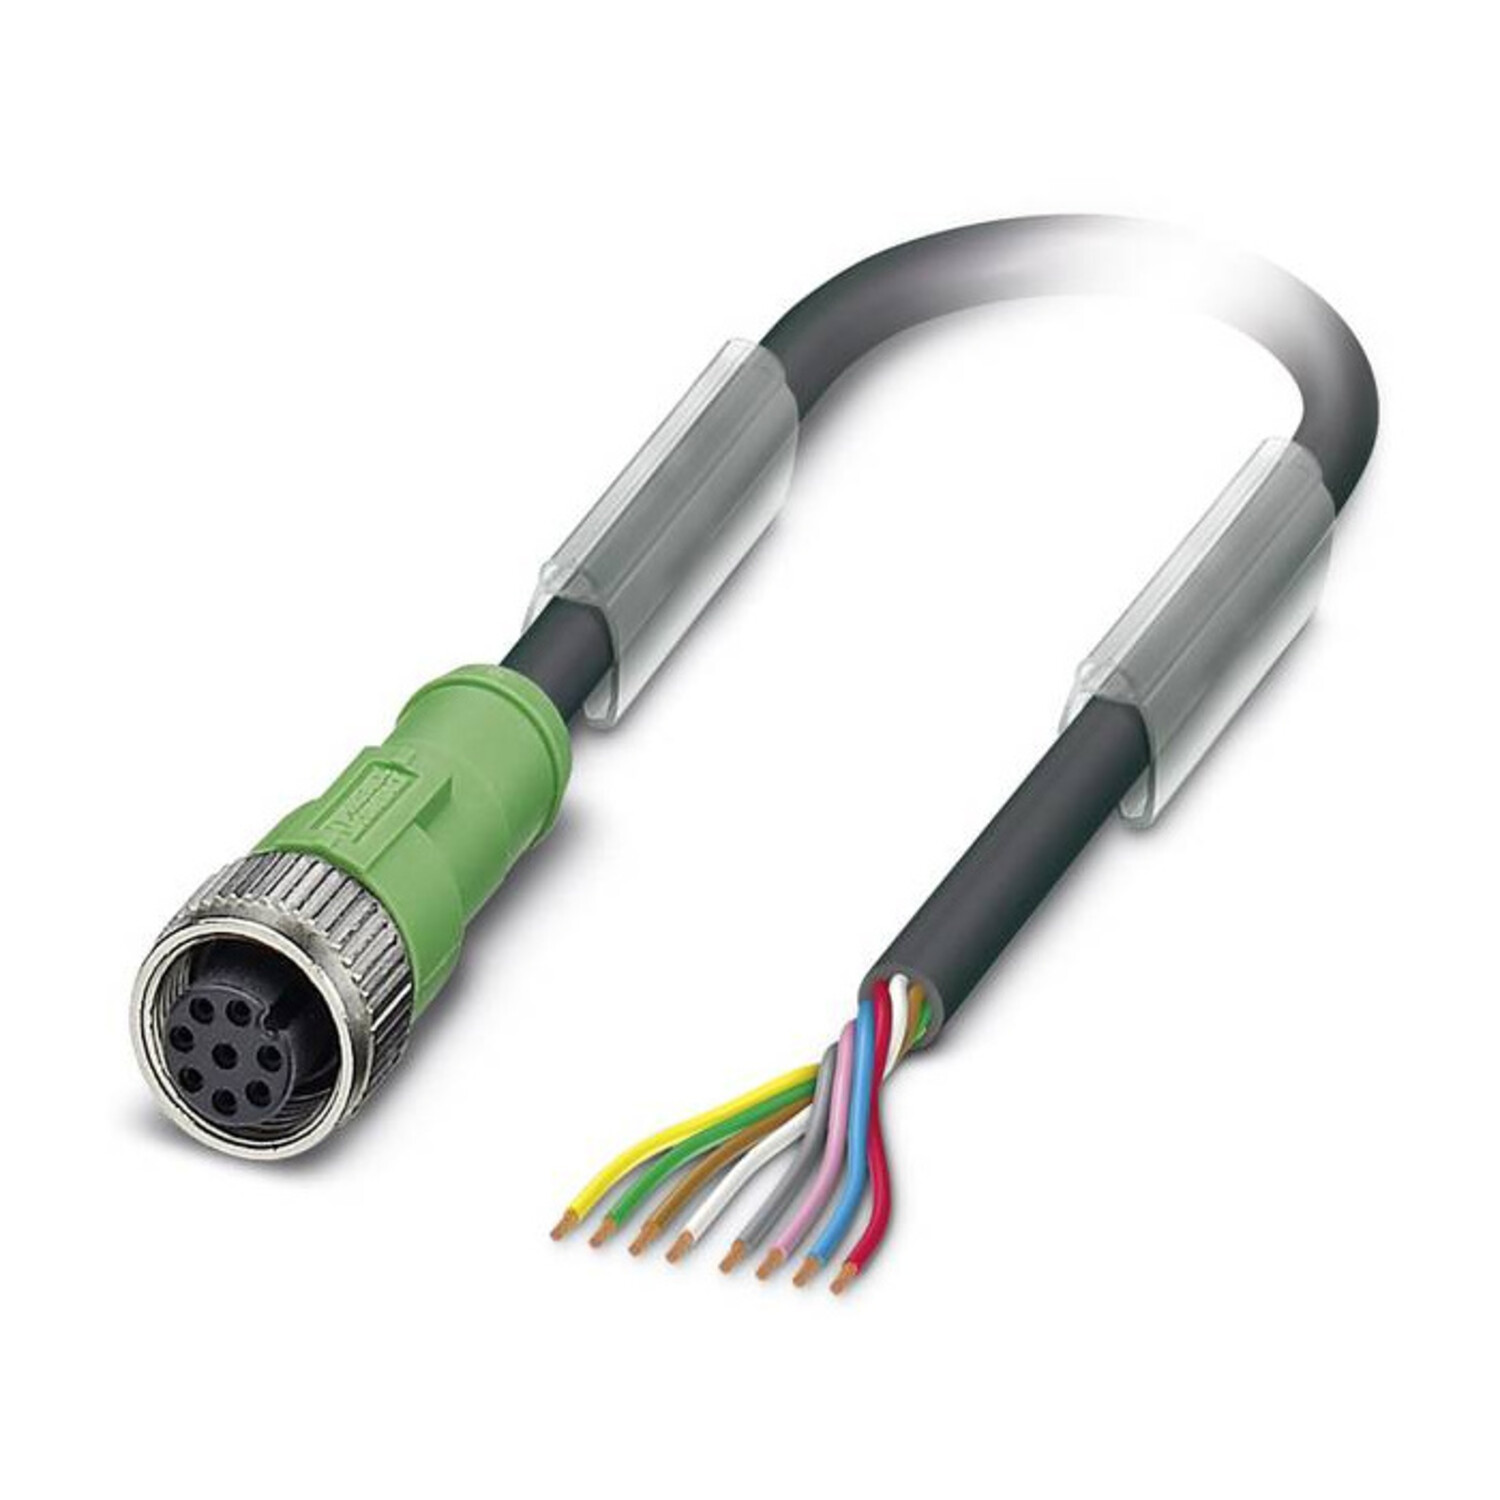 https://cdn.webshopapp.com/shops/40376/files/328114954/1500x1500x2/inxpect-pvc-kabel-mit-1-stecker-m12-8-polig-buchse.jpg